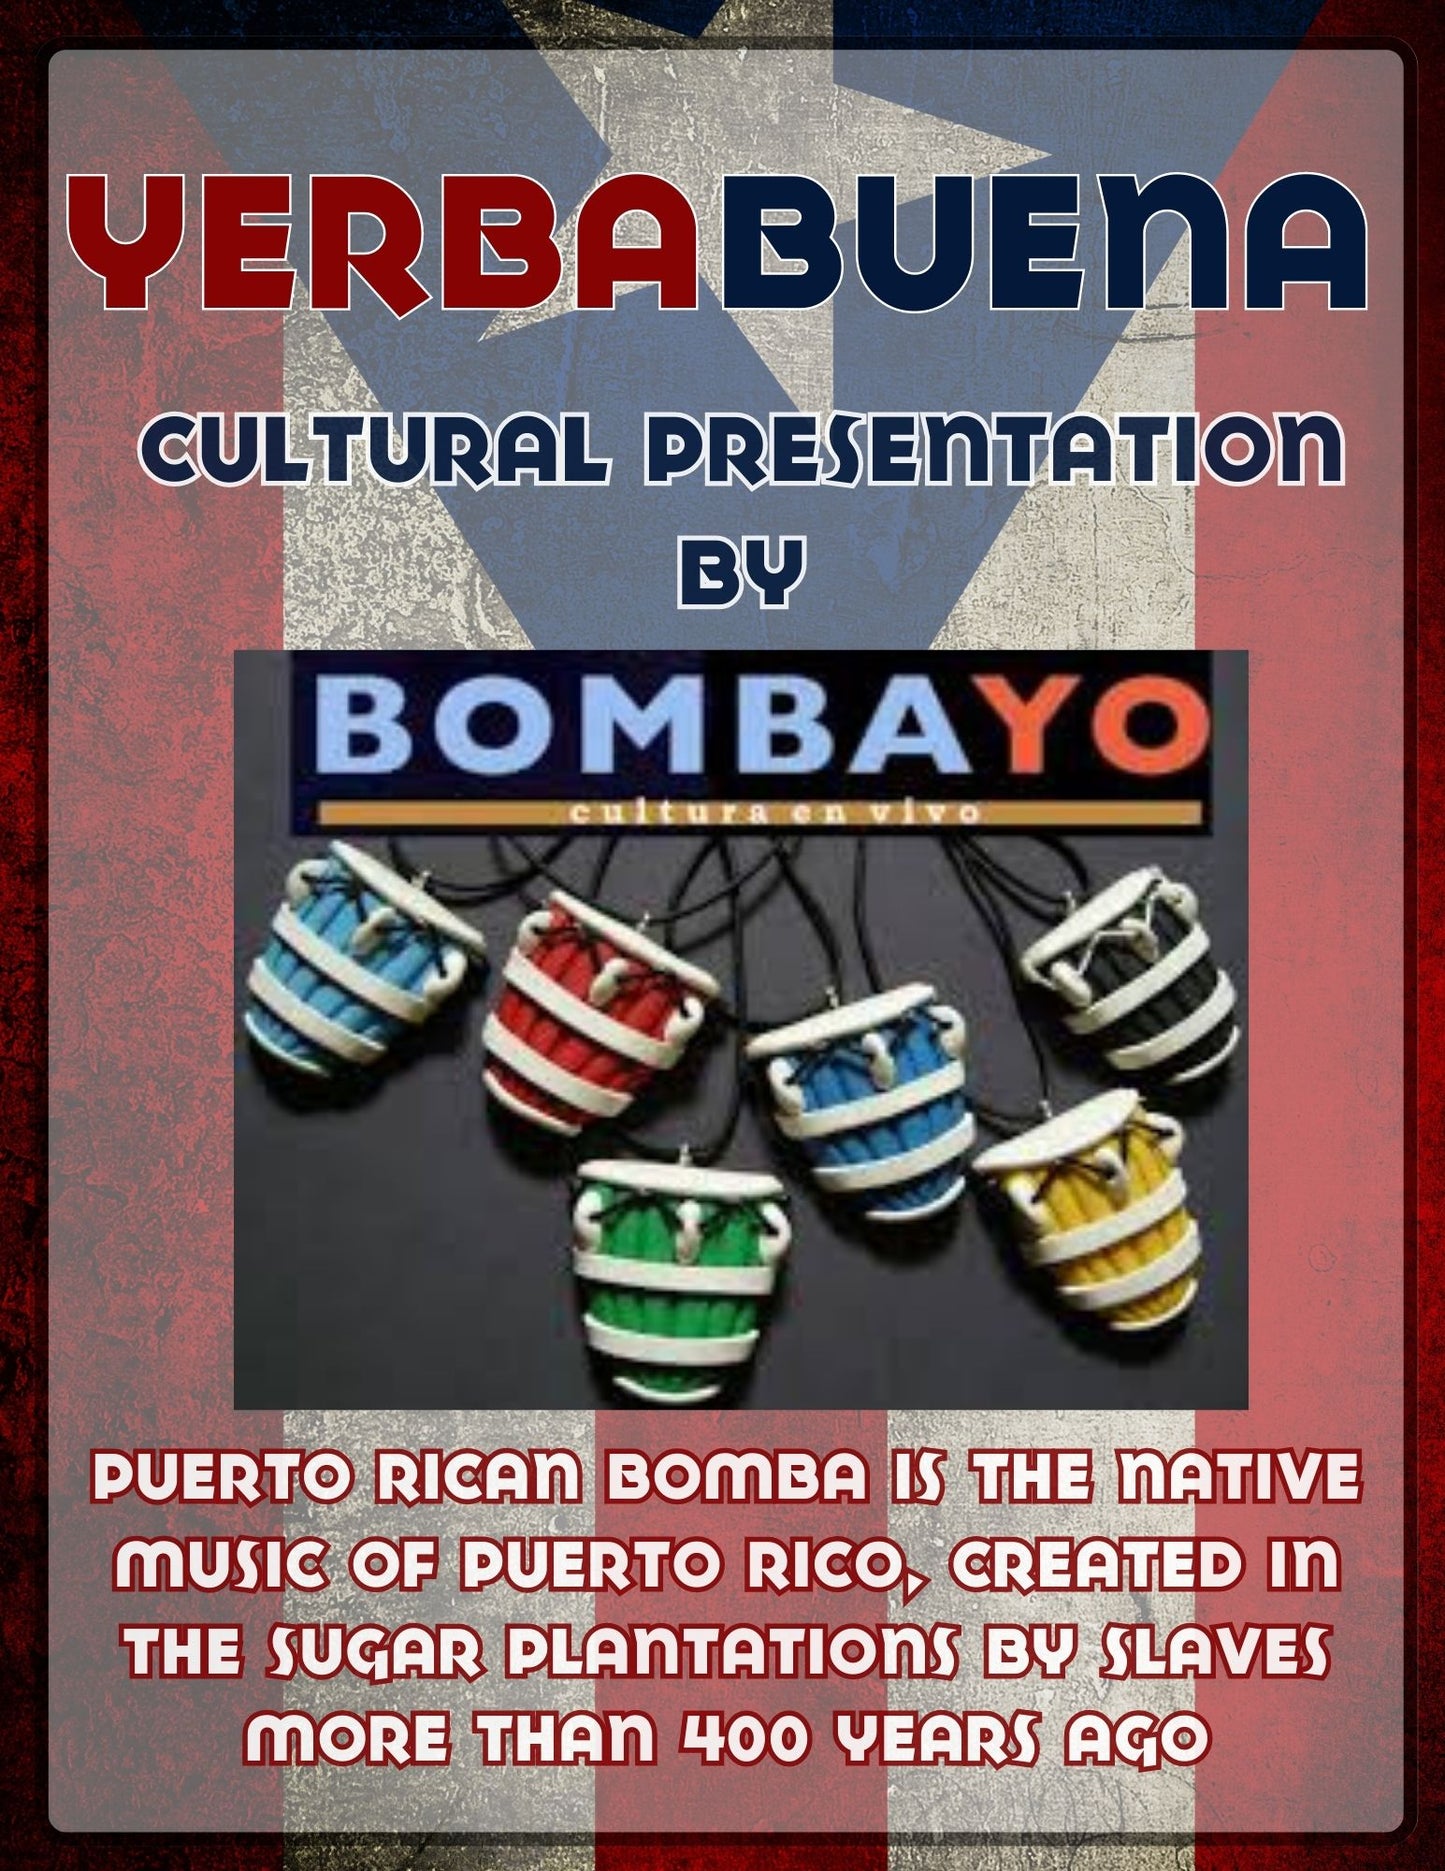 YERBA BUENA - A Celebration Of Puerto Rican Culture